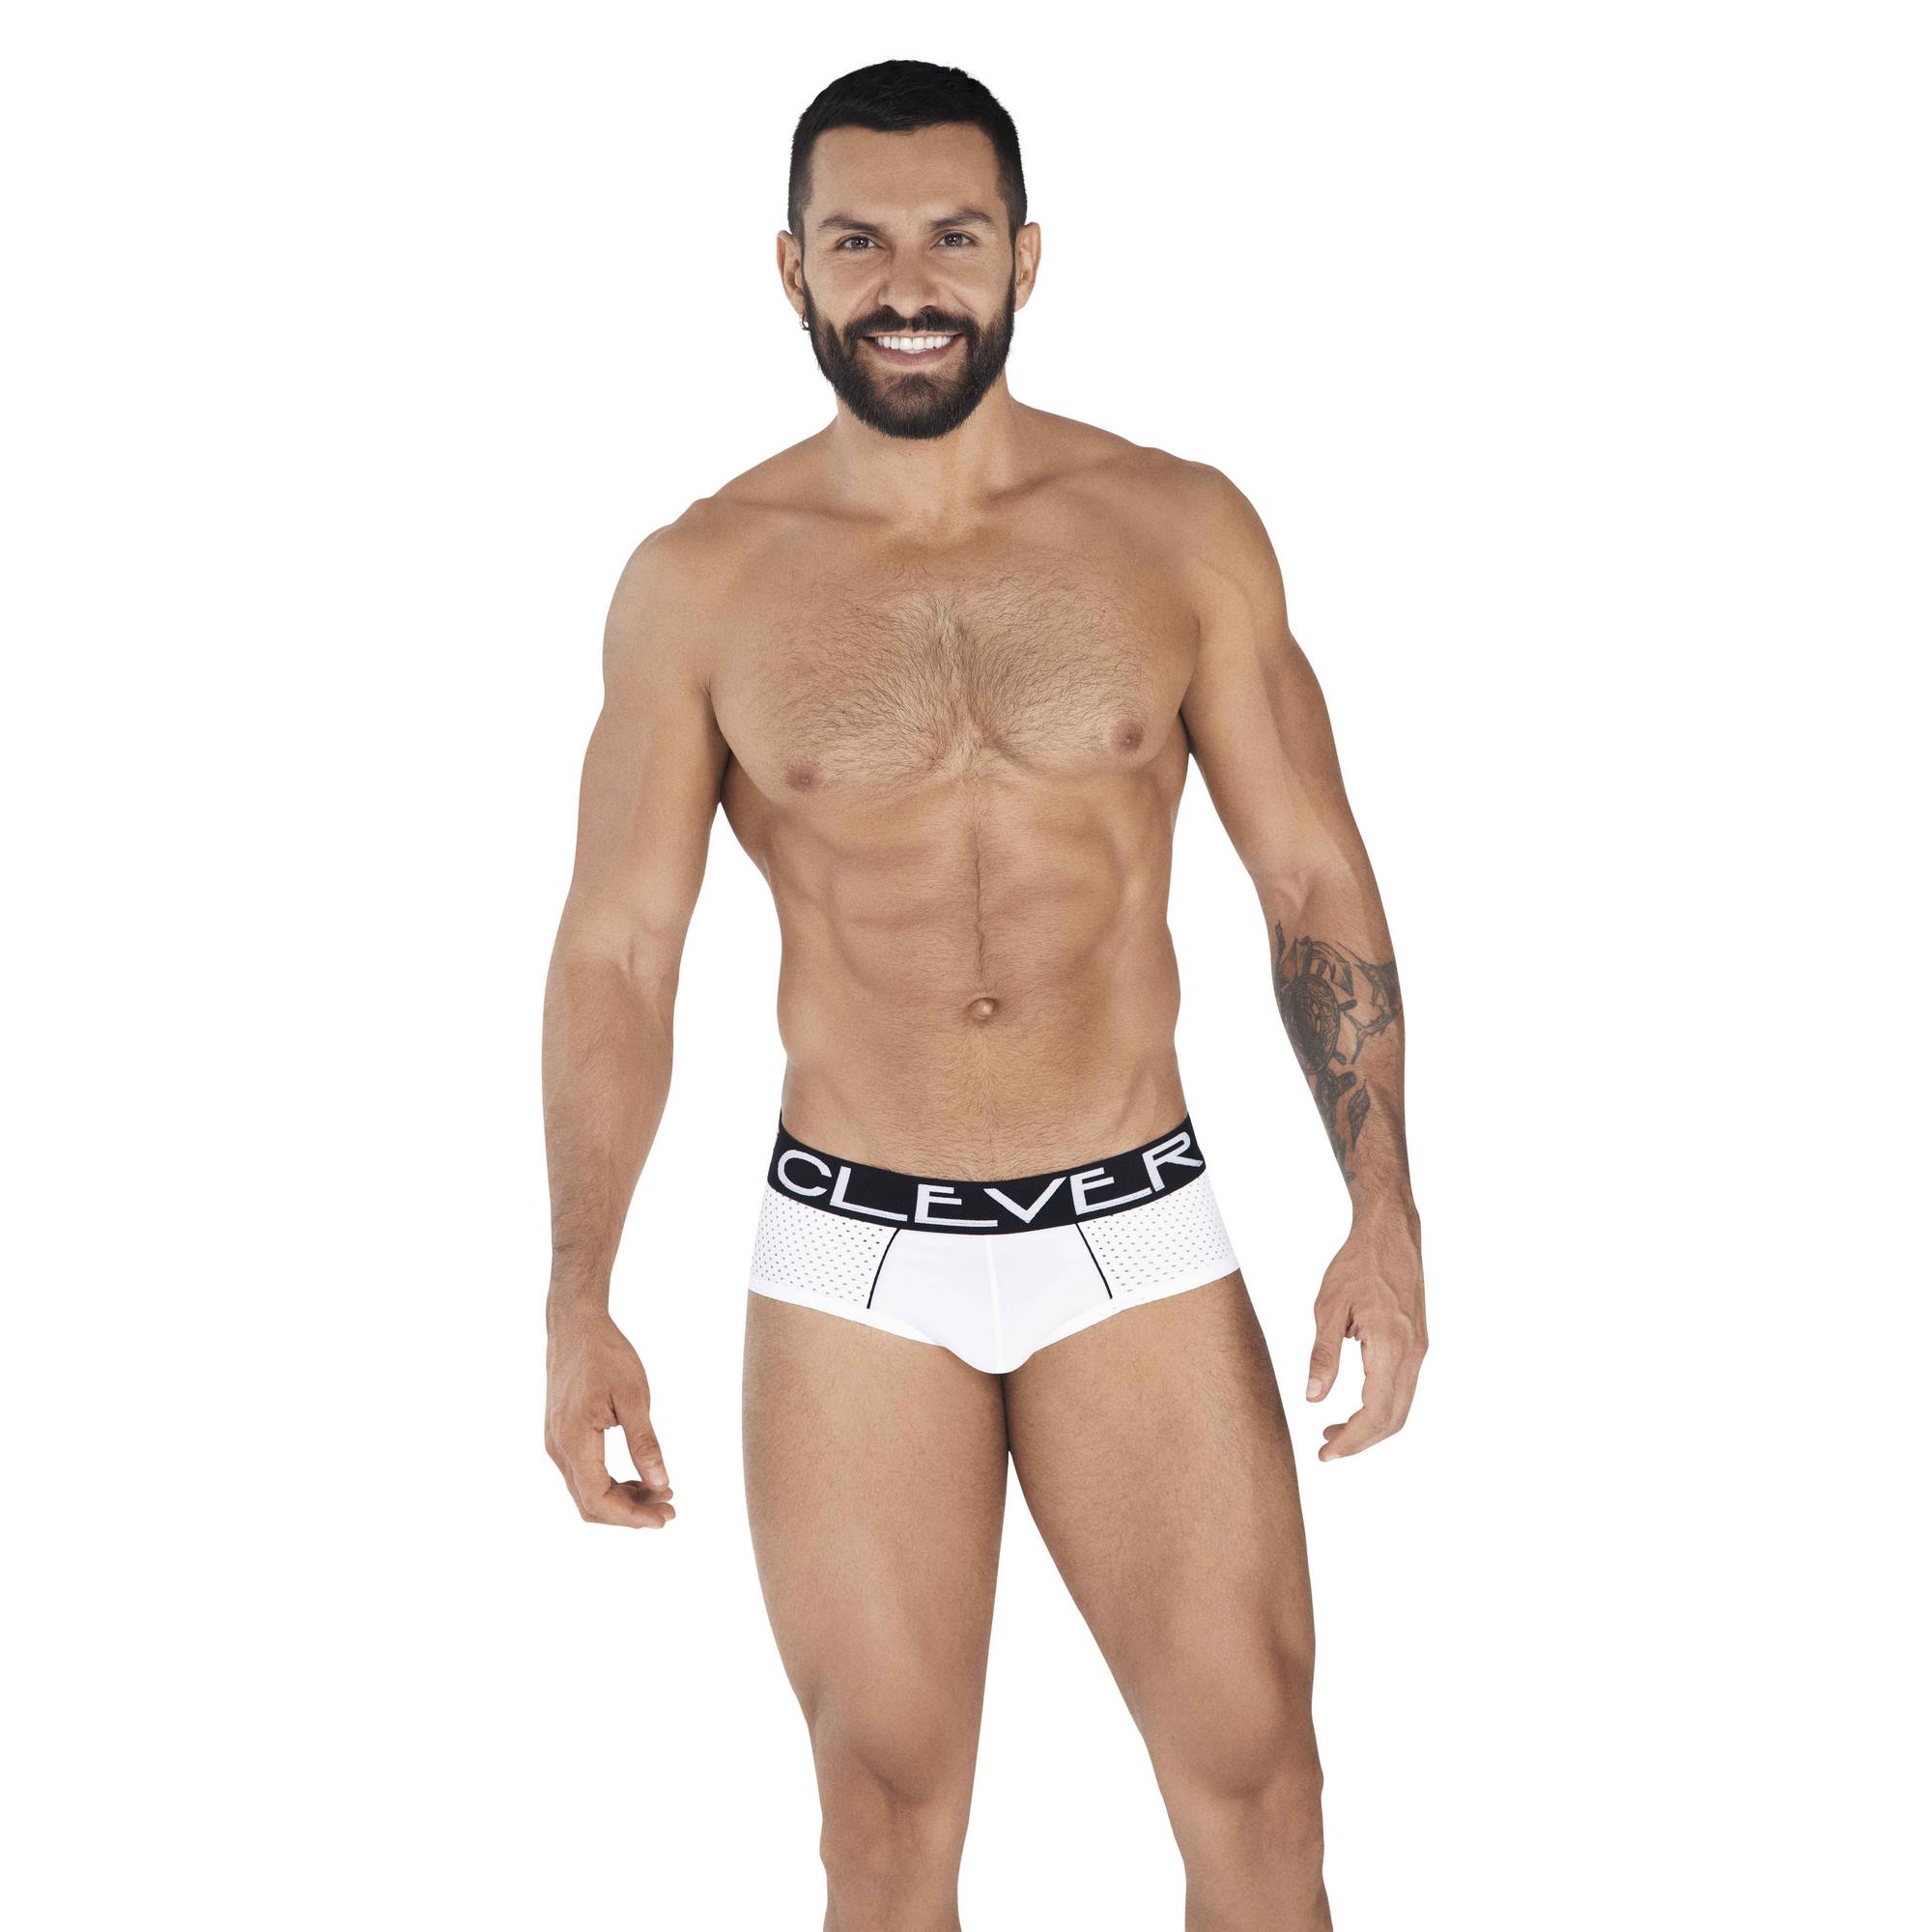 Трусы мужские Clever Masculine Underwear 0362 белые XL